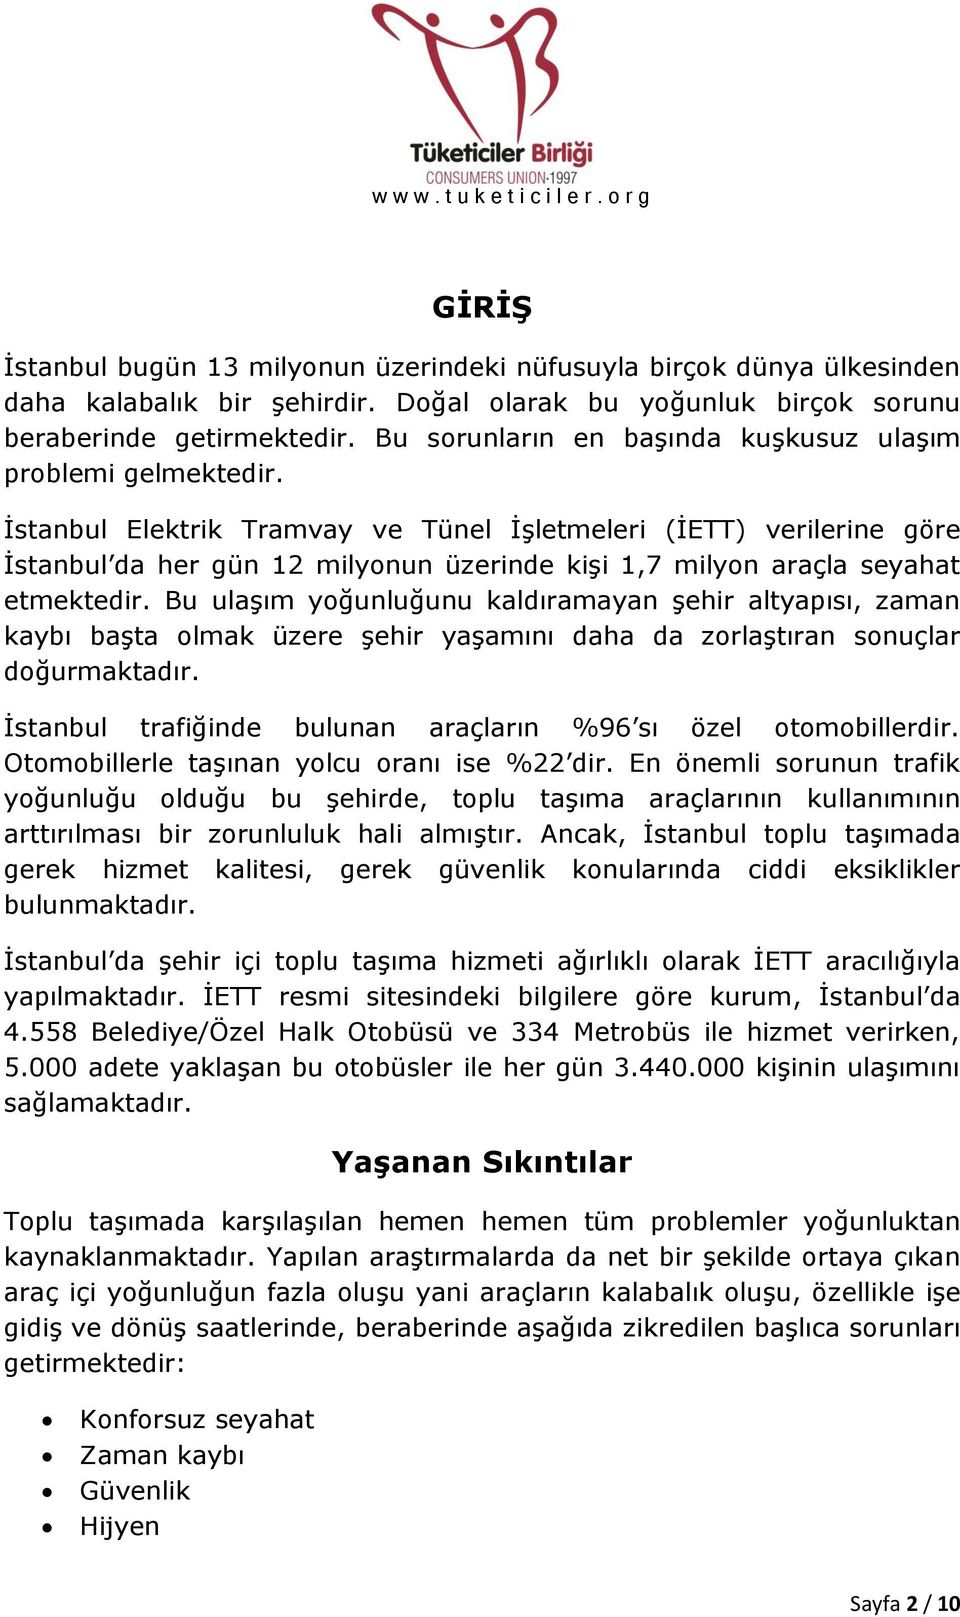 İstanbul Elektrik Tramvay ve Tünel İşletmeleri (İETT) verilerine göre İstanbul da her gün 12 milyonun üzerinde kişi 1,7 milyon araçla seyahat etmektedir.